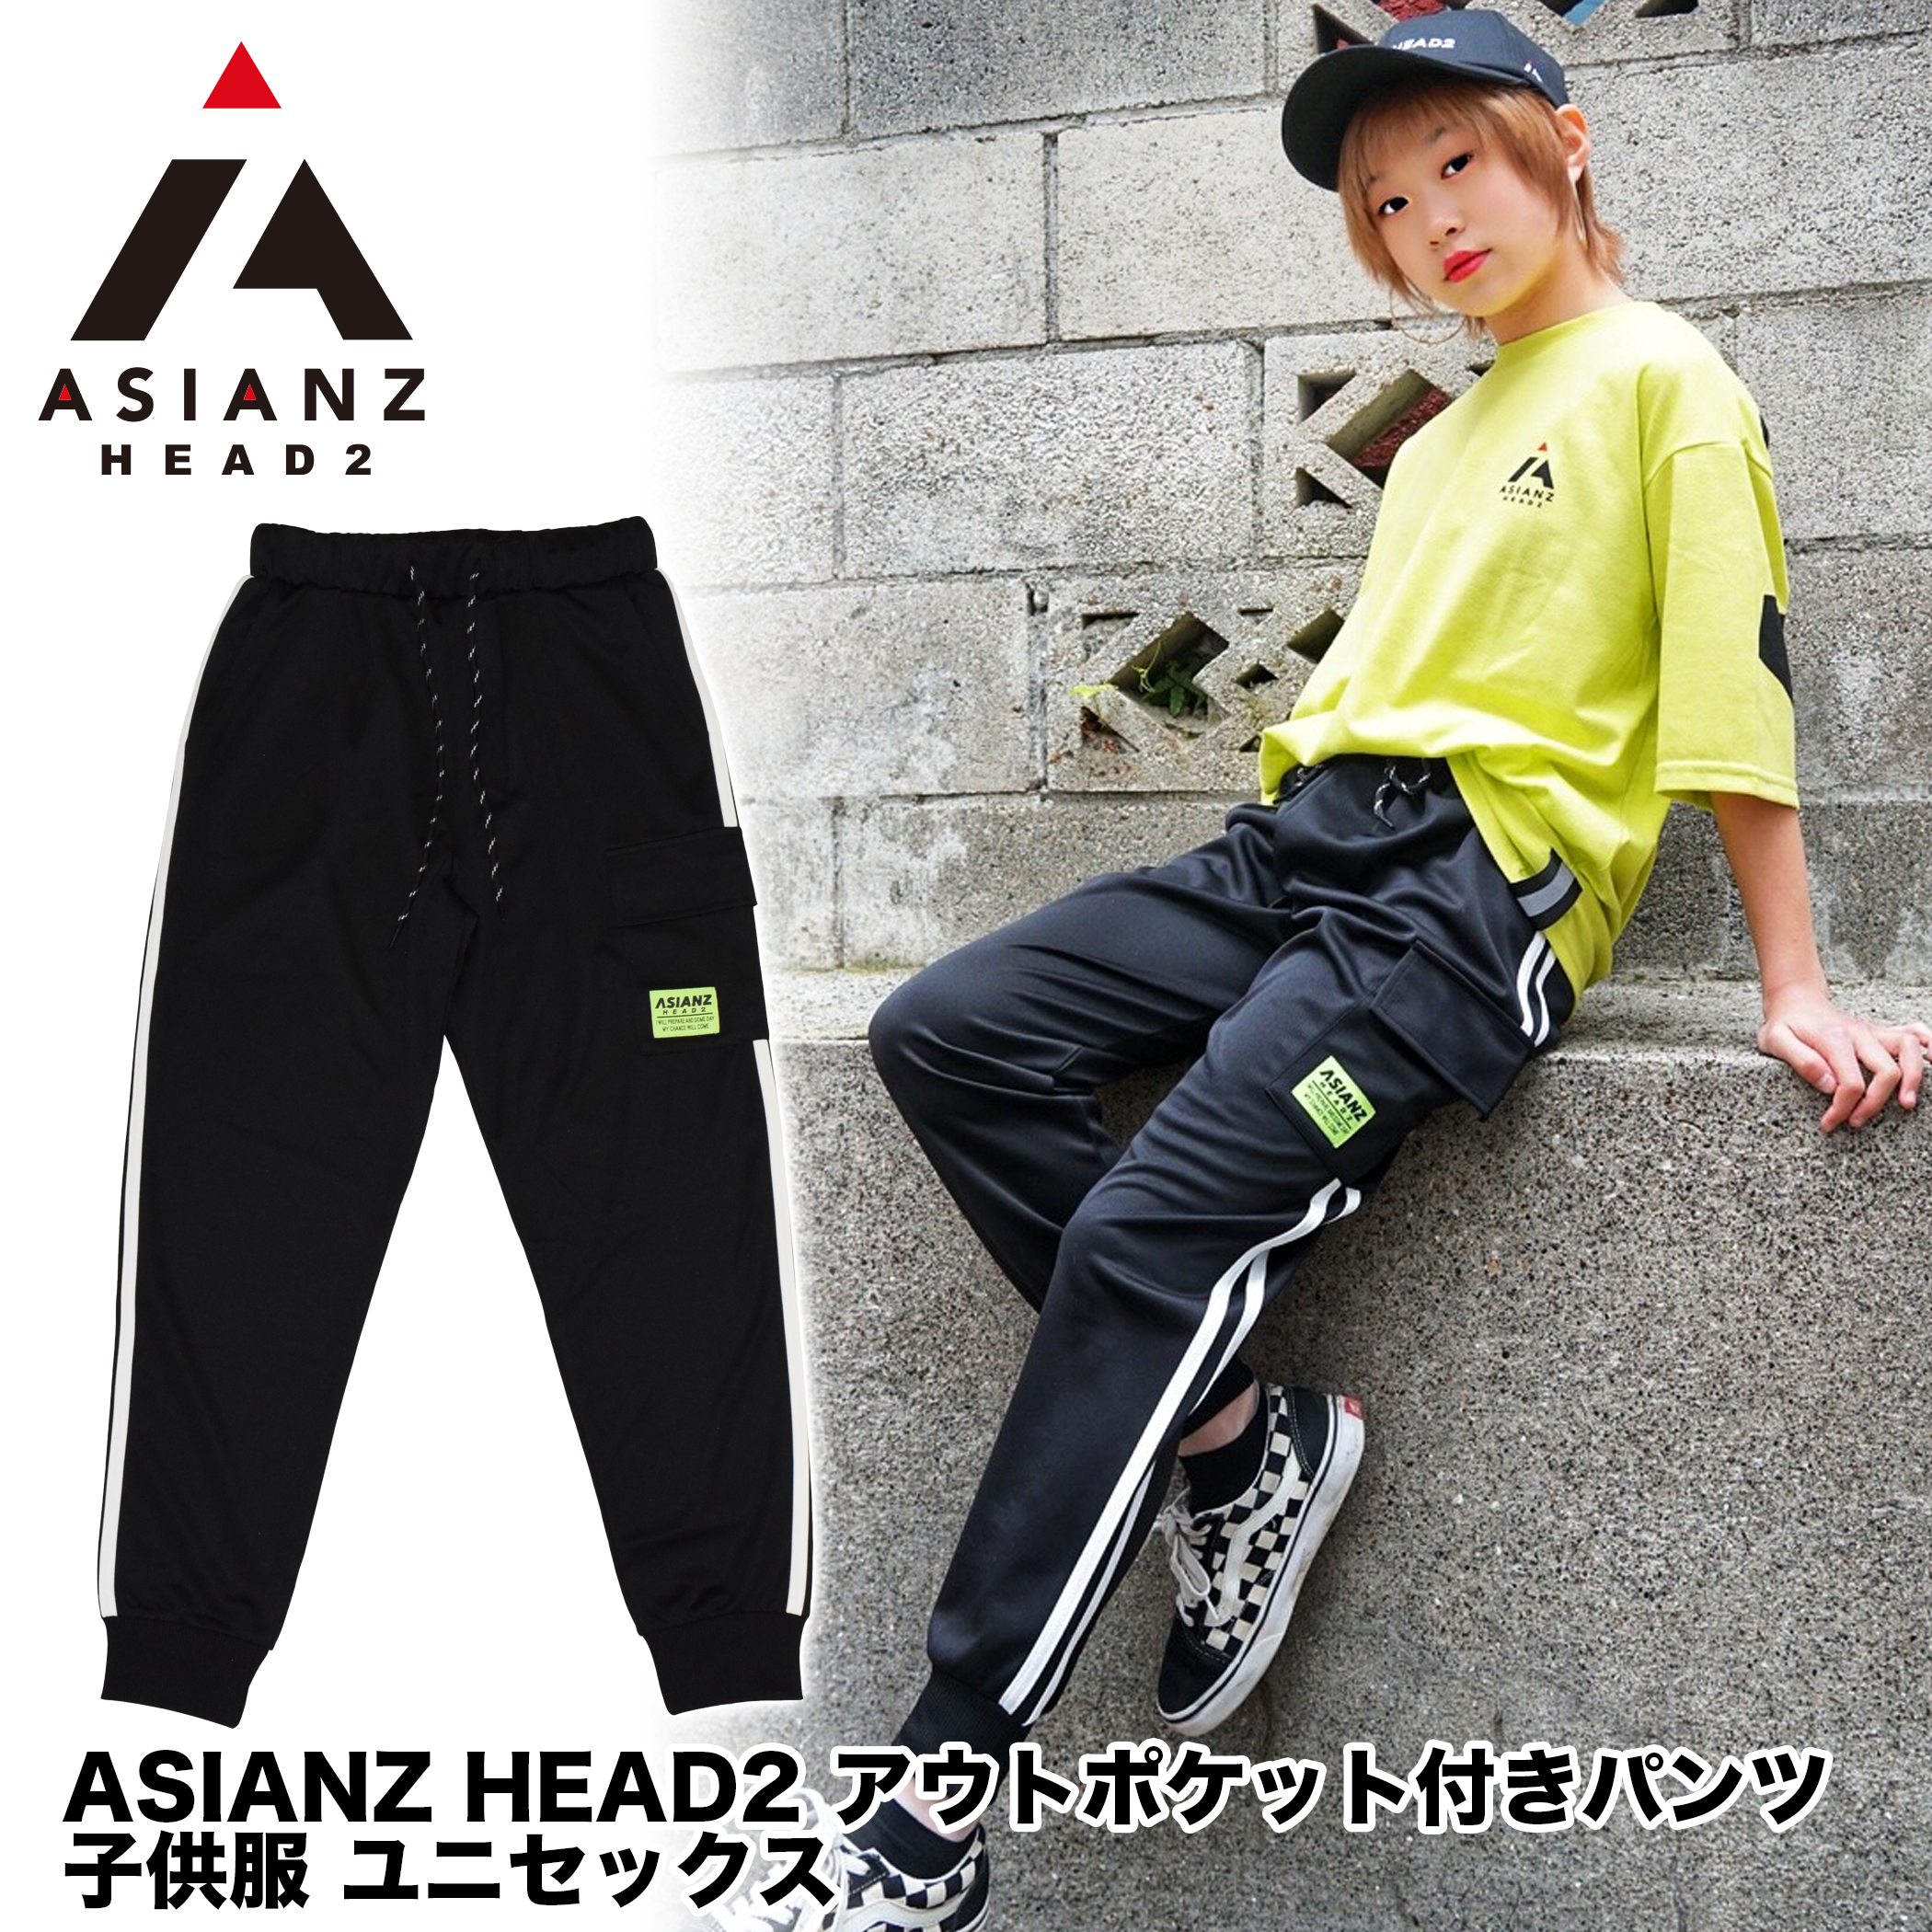 (セール商品) ASIANZ HEAD2 アウトポケット付きパンツ キッズウェアー